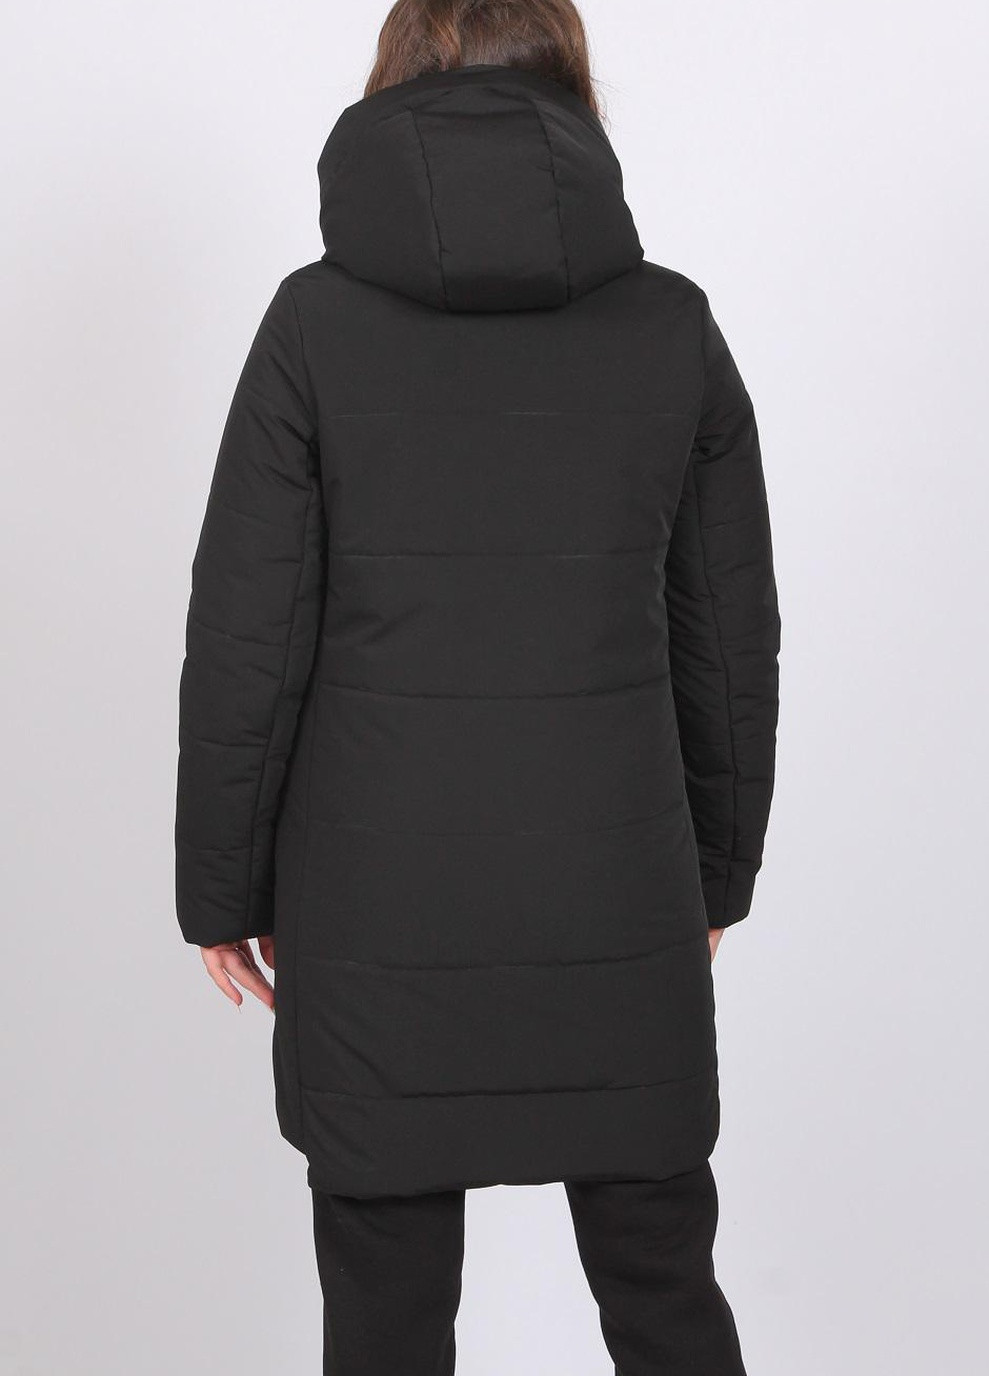 Черная куртка удлиненная женская 205 плащевка черная Актуаль